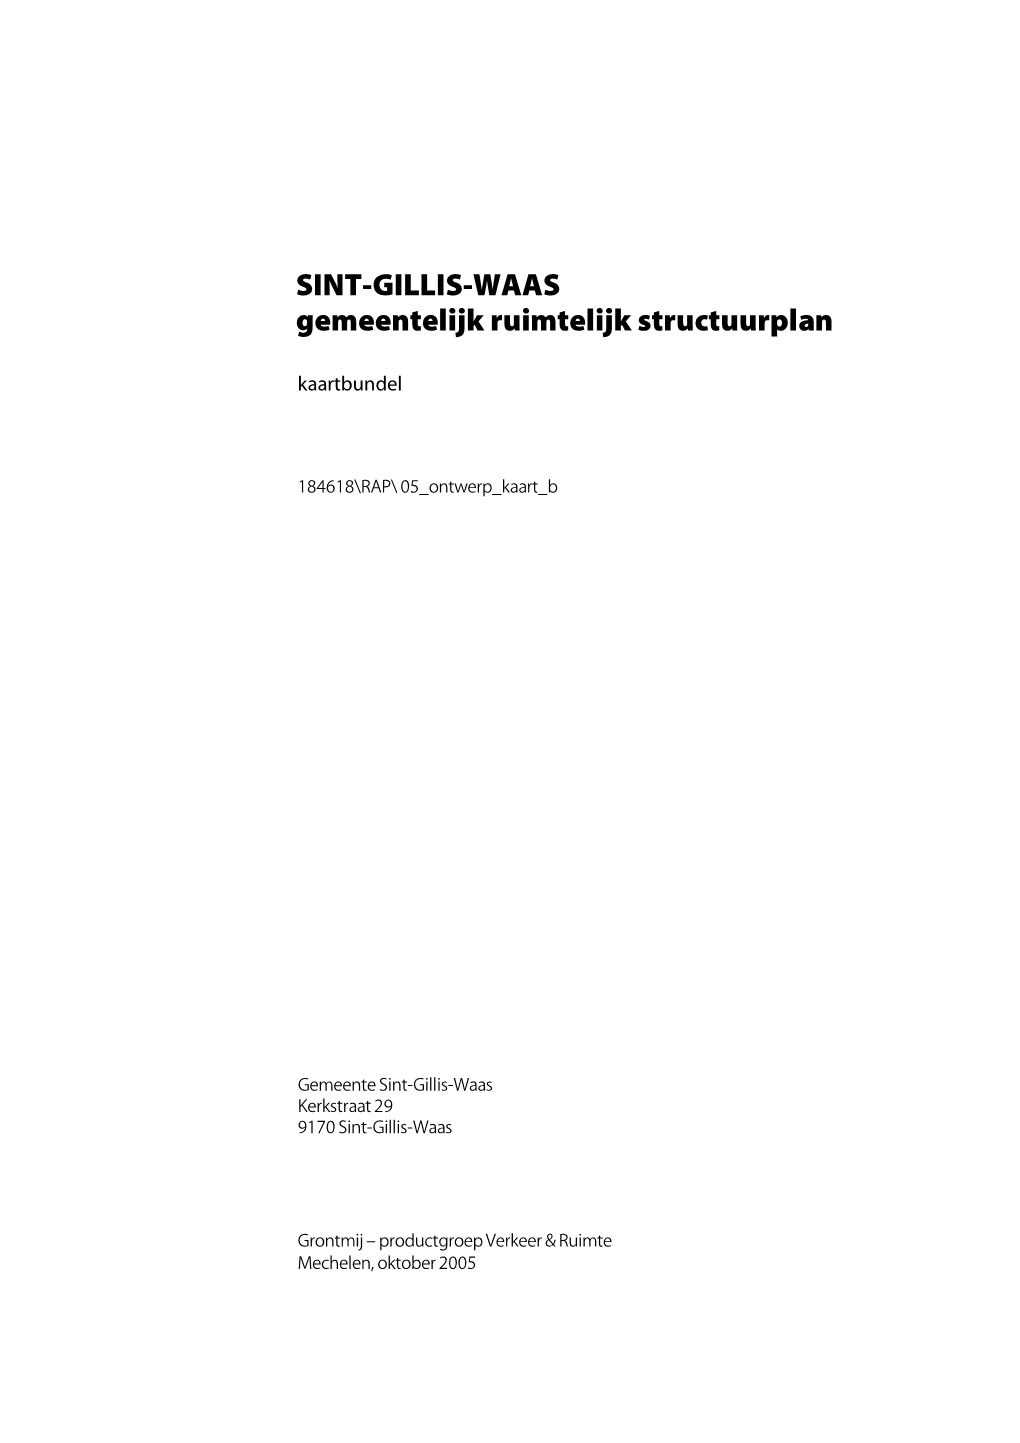 SINT-GILLIS-WAAS Gemeentelijk Ruimtelijk Structuurplan